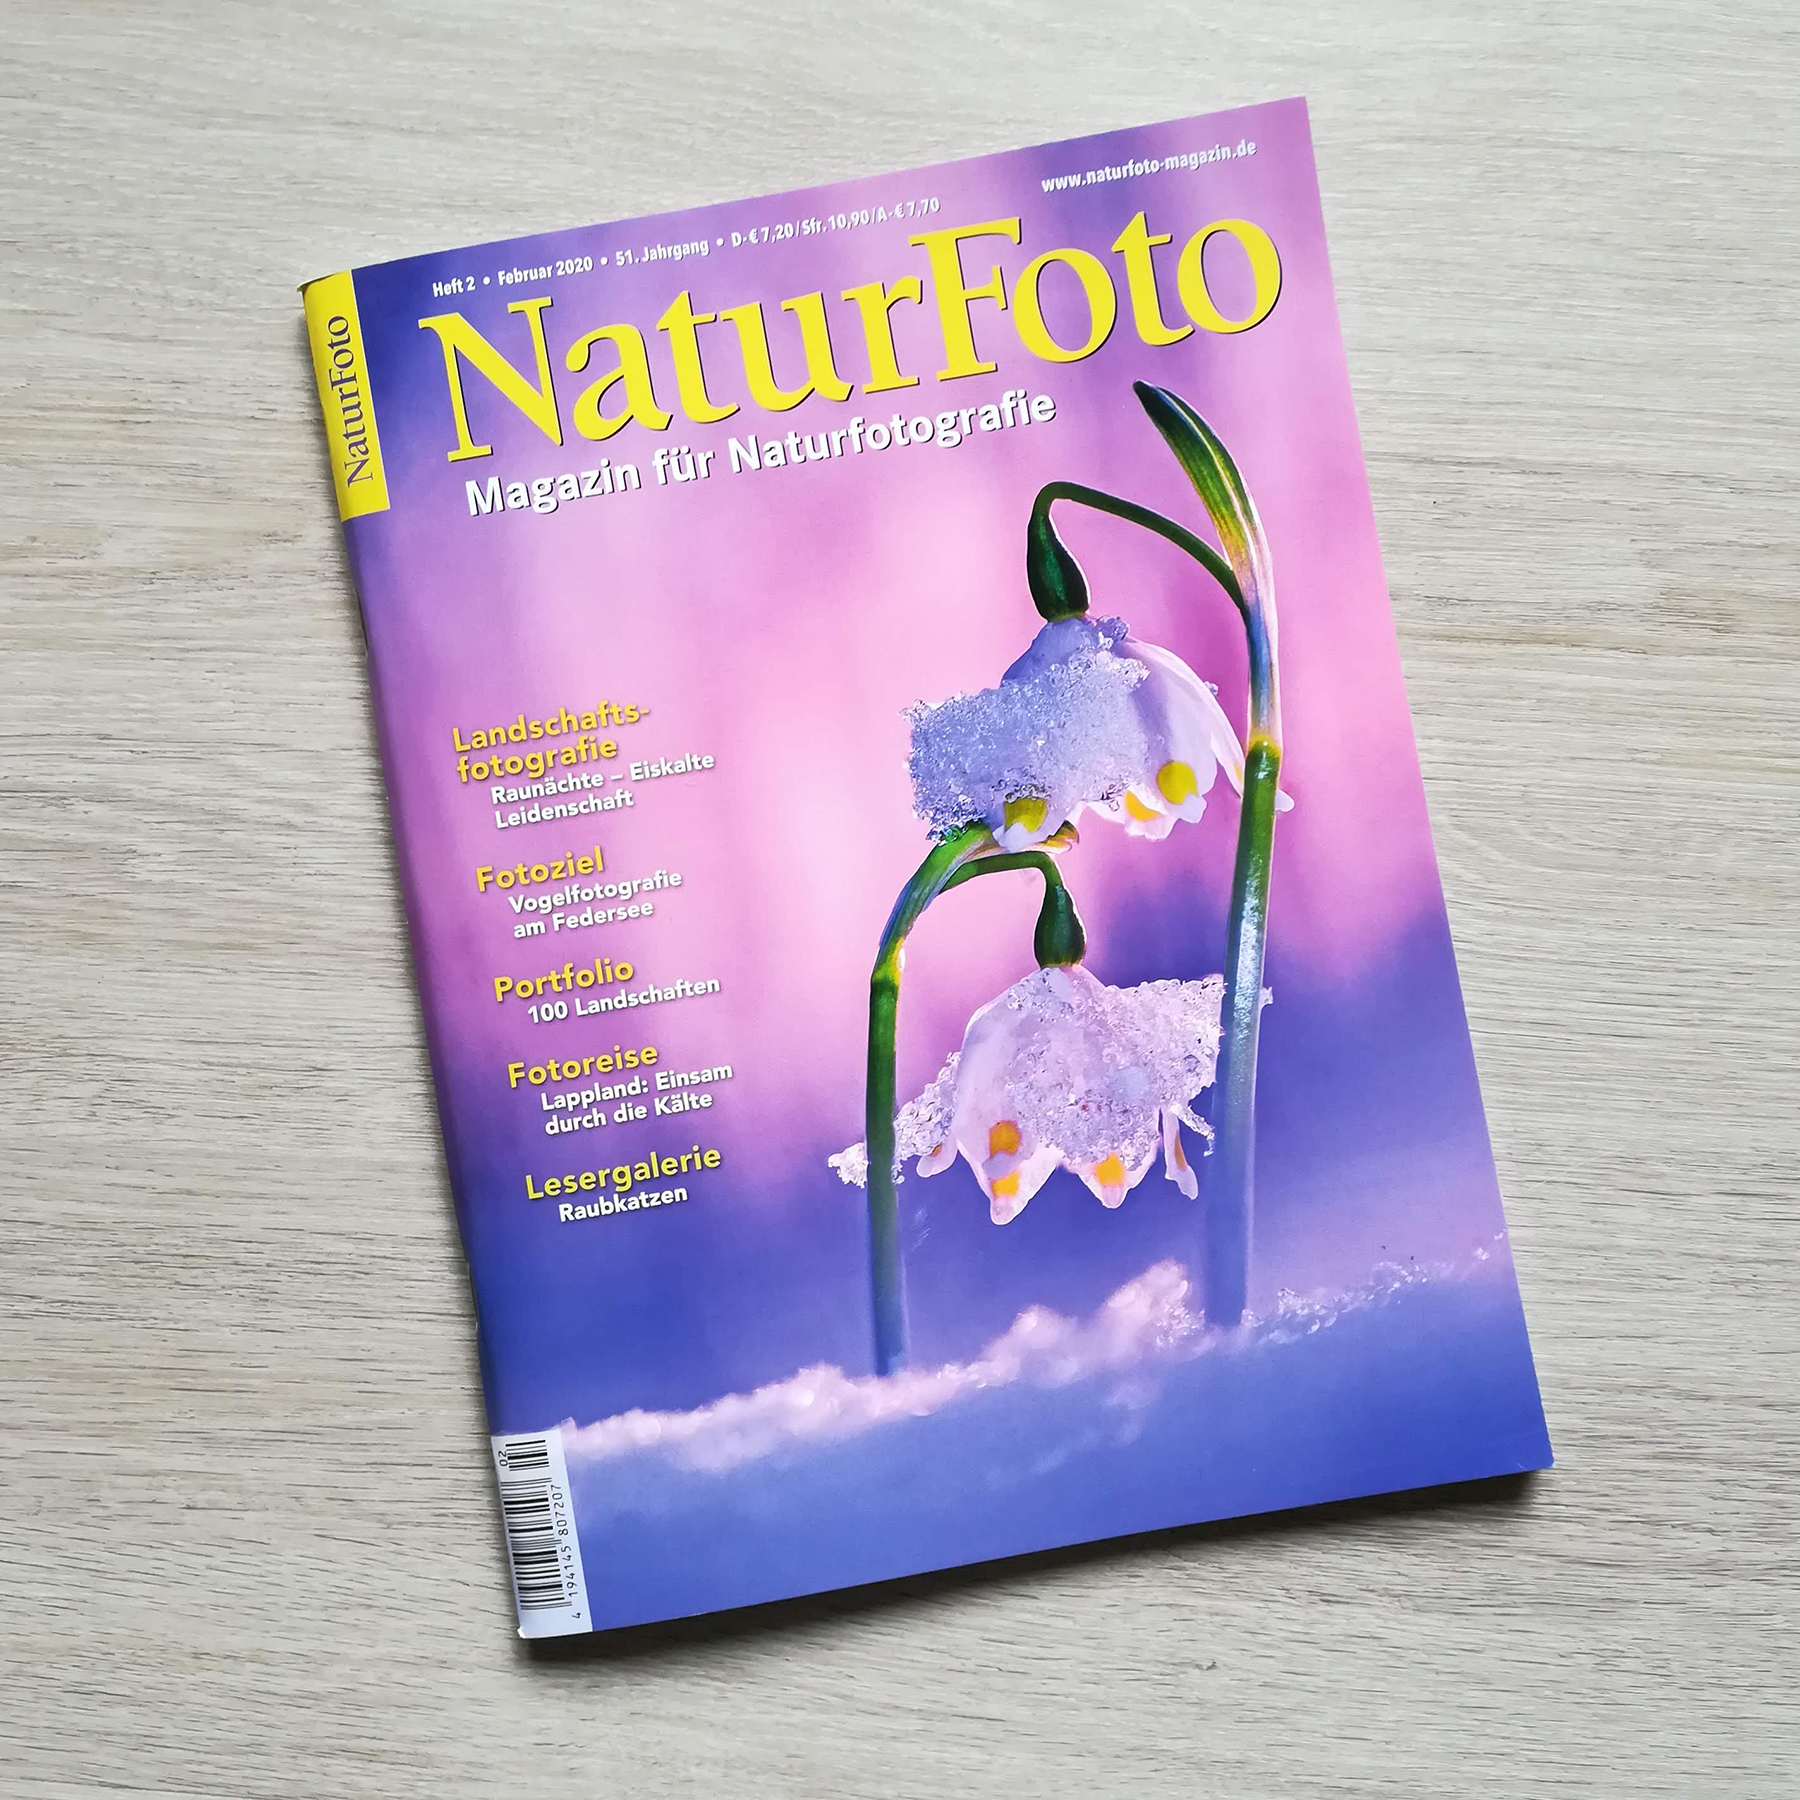 Photo in “NaturFoto” magazine